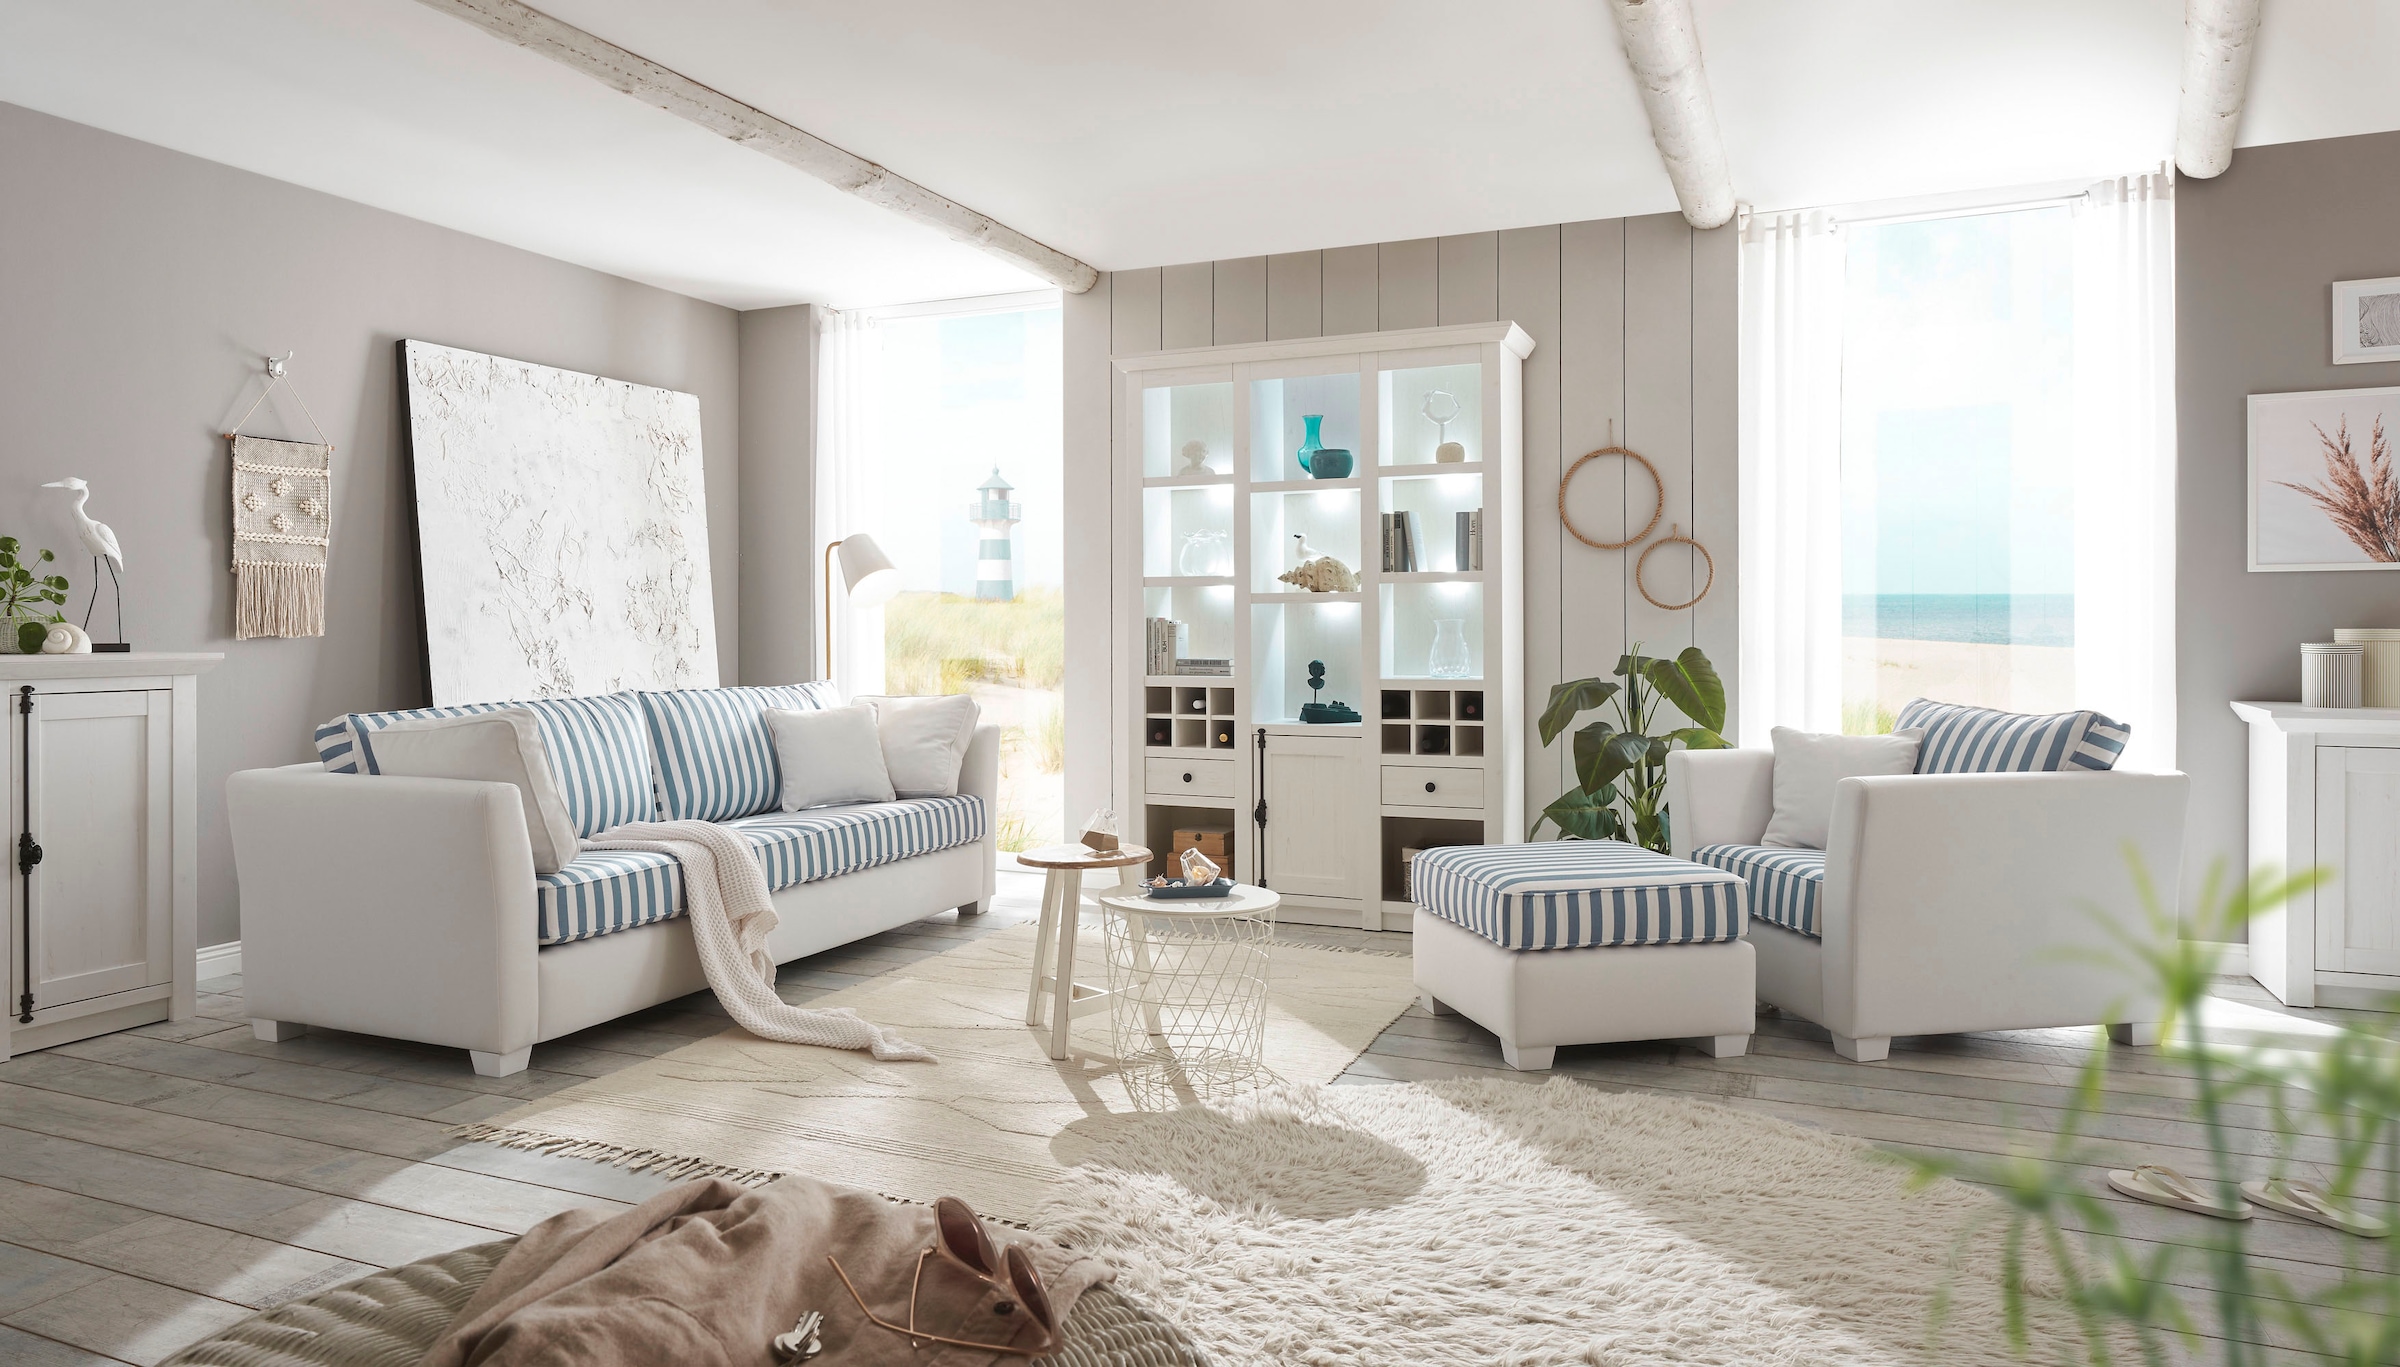 Home affaire Sessel »CALIFORNIA«, maritimer Landhausstil, Sessel mit  Holzfüßen Weiß lackiert kaufen bei OTTO